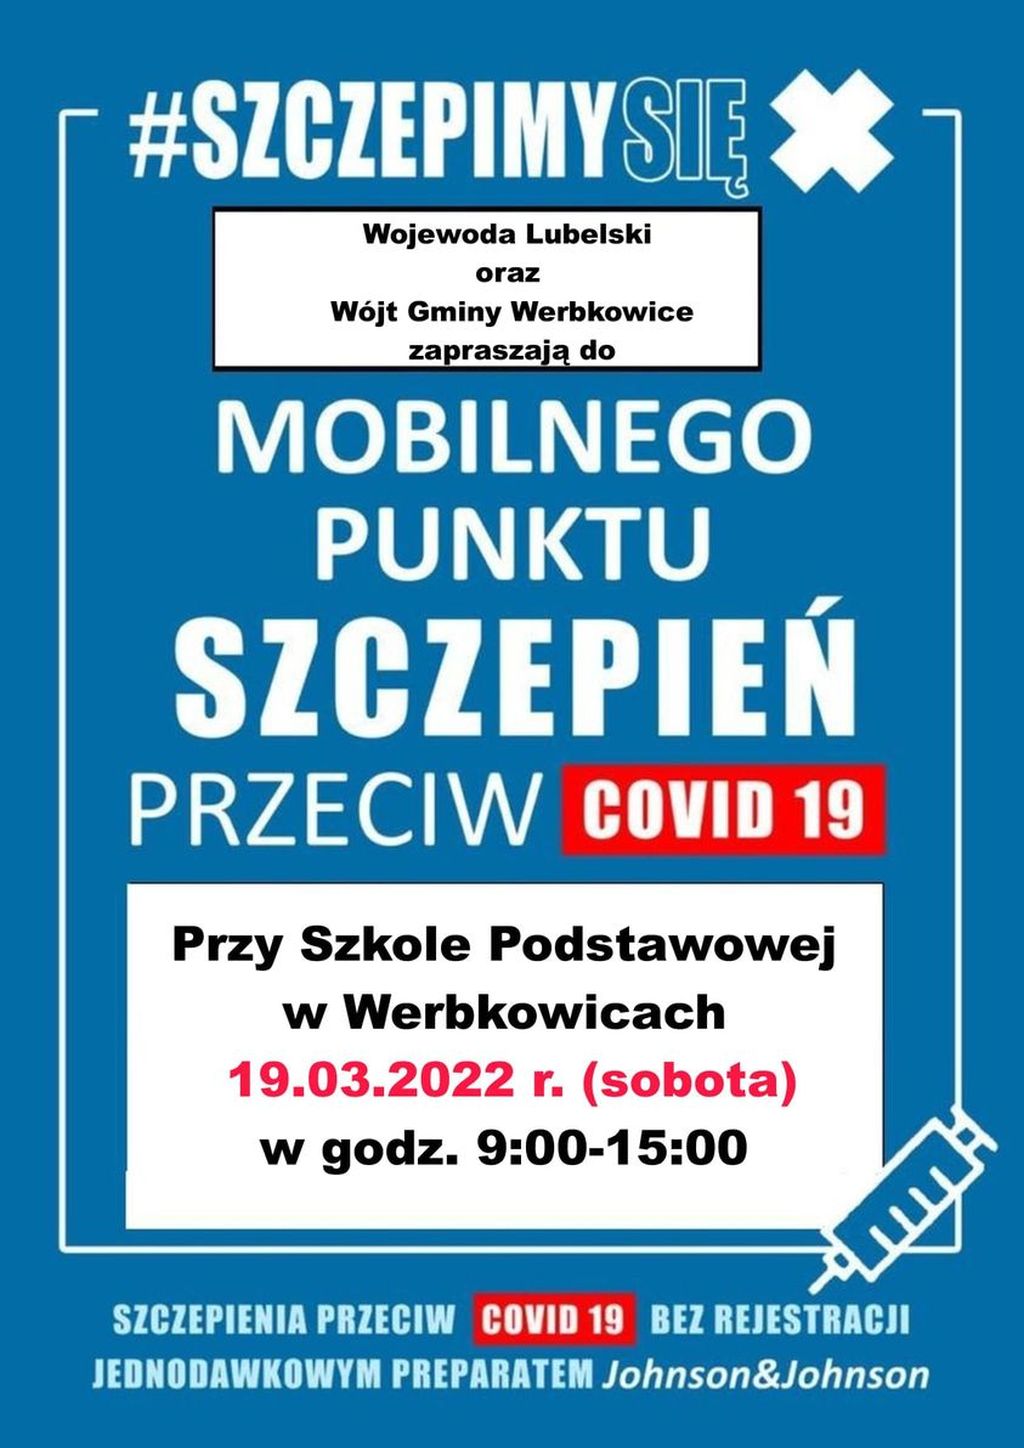 Szczepieniobus w Werbkowicach w dniu 19.03.2021